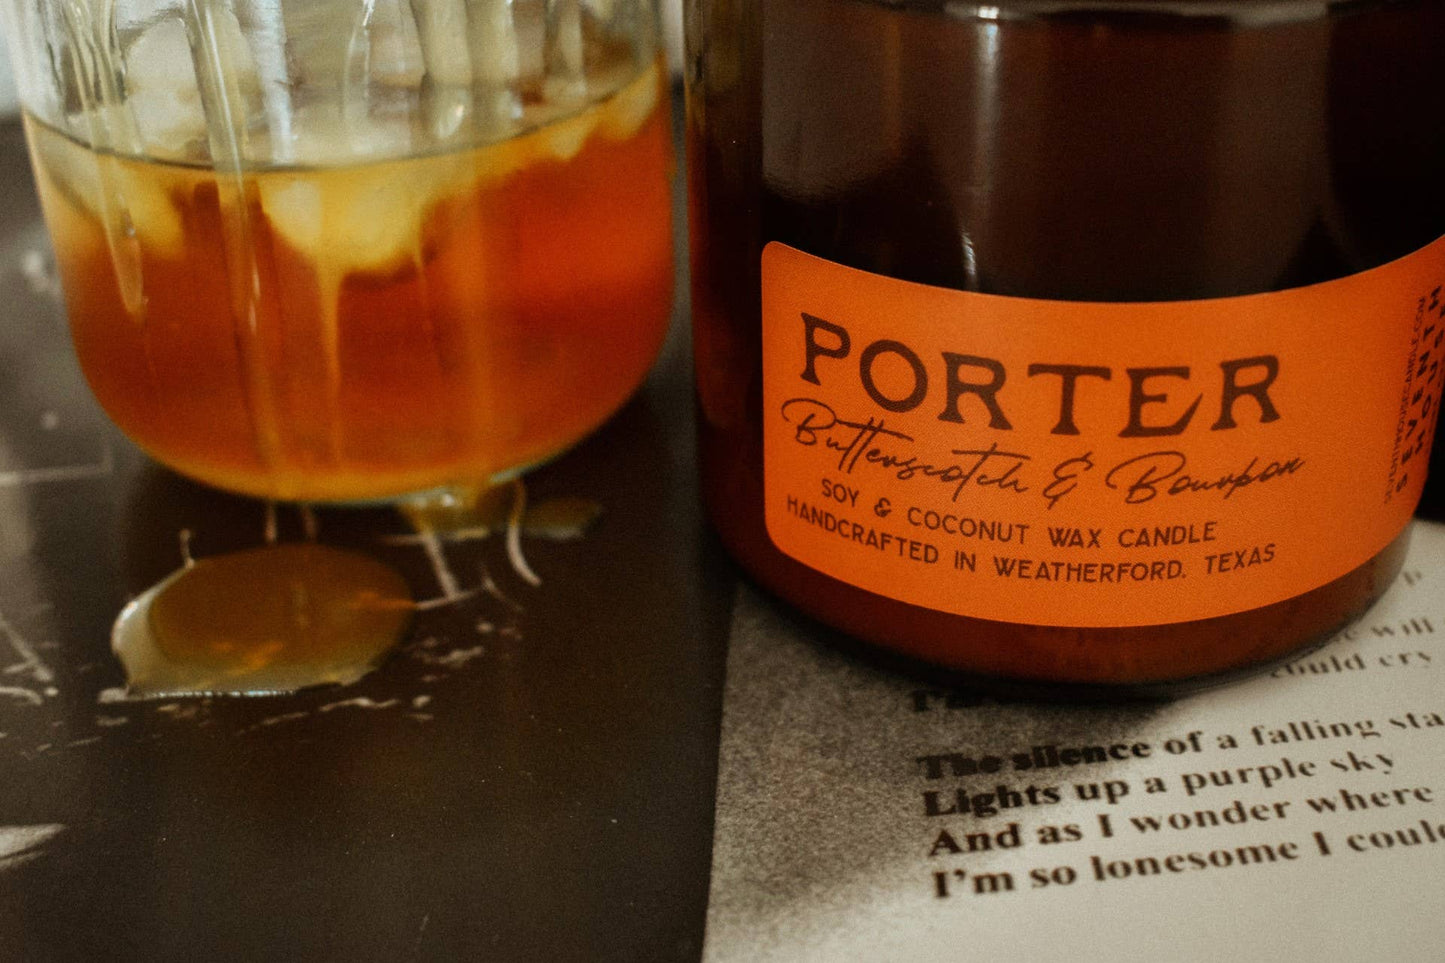 Porter: Butterscotch & Bourbon Candle